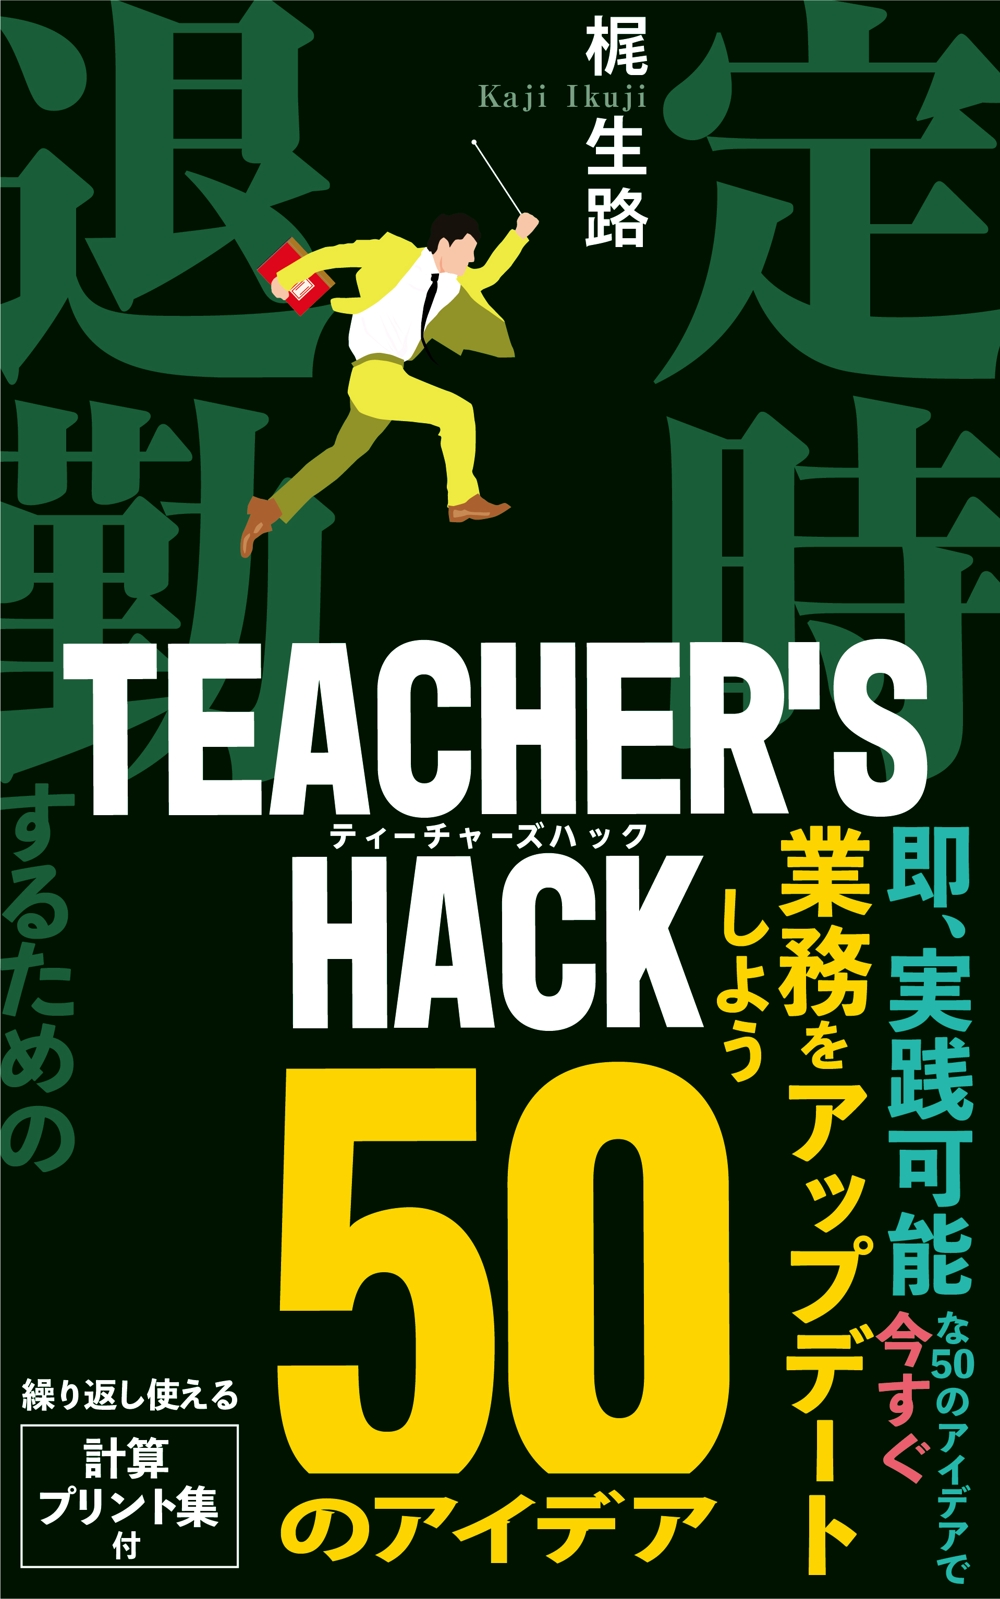 電子書籍「Teacher's Hack」の表紙デザインの依頼